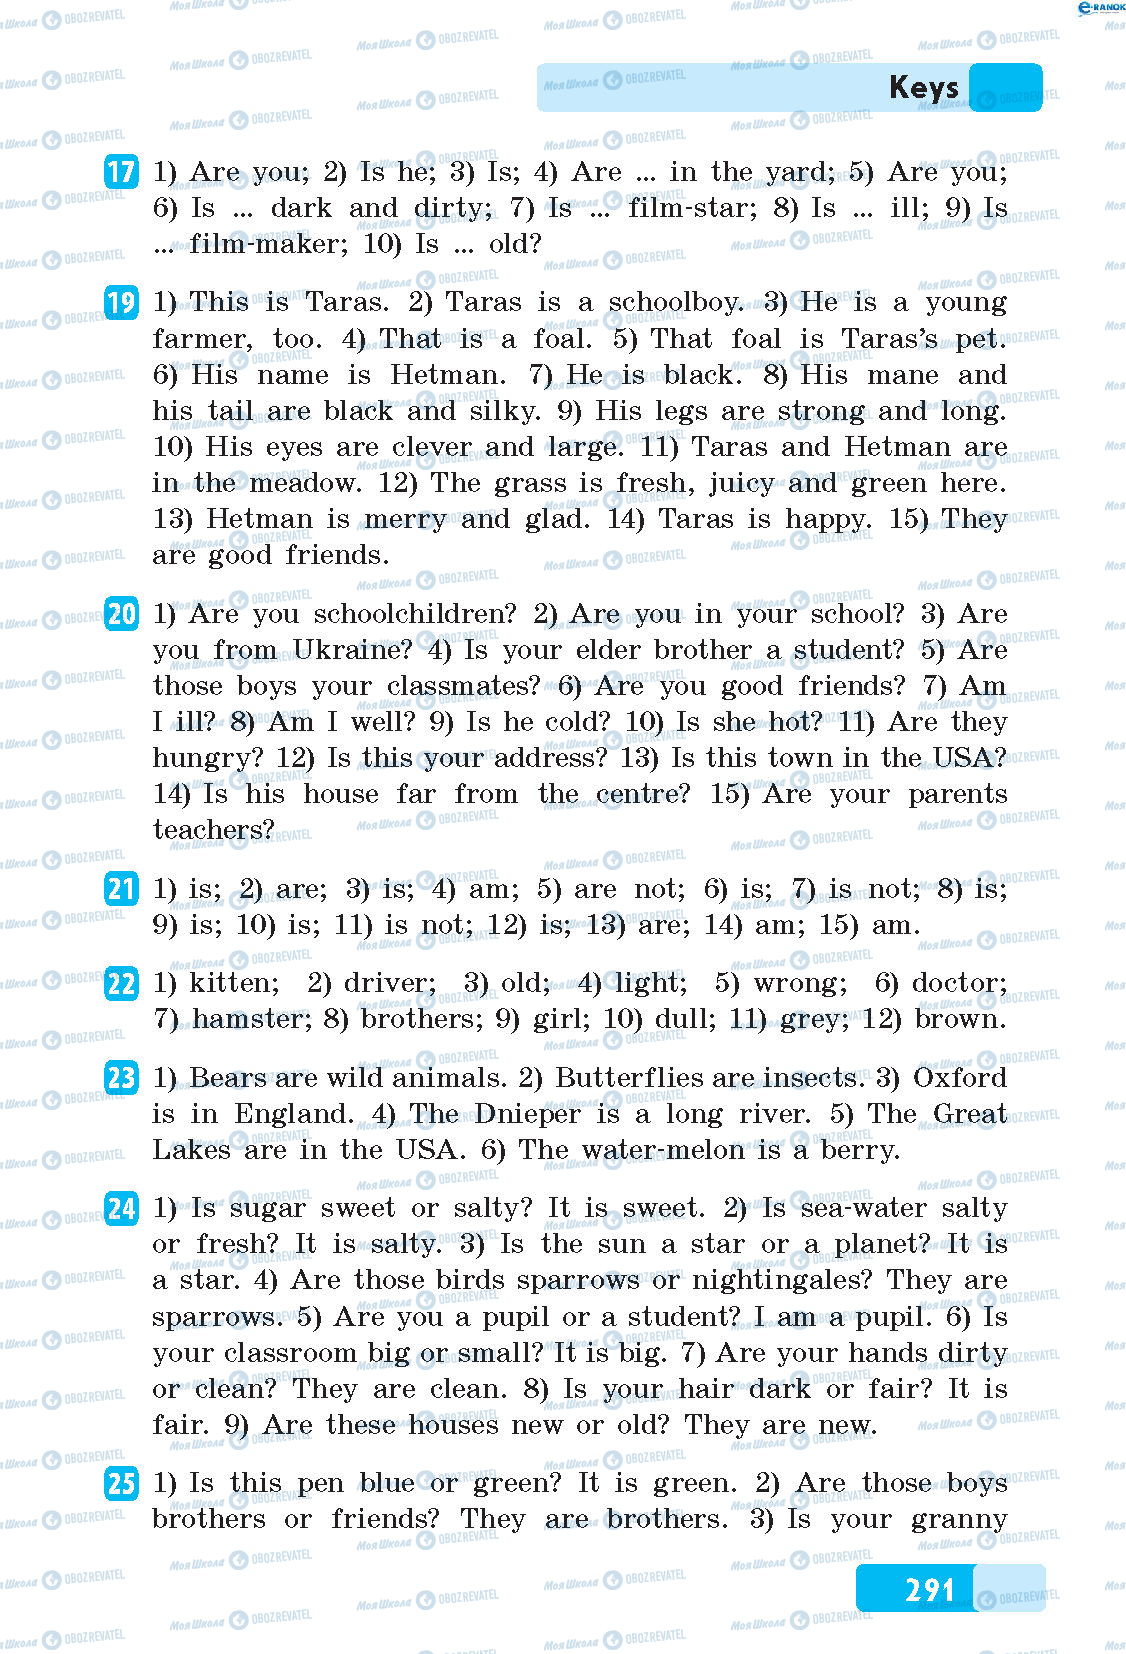 ГДЗ Англійська мова 5 клас сторінка 17-25